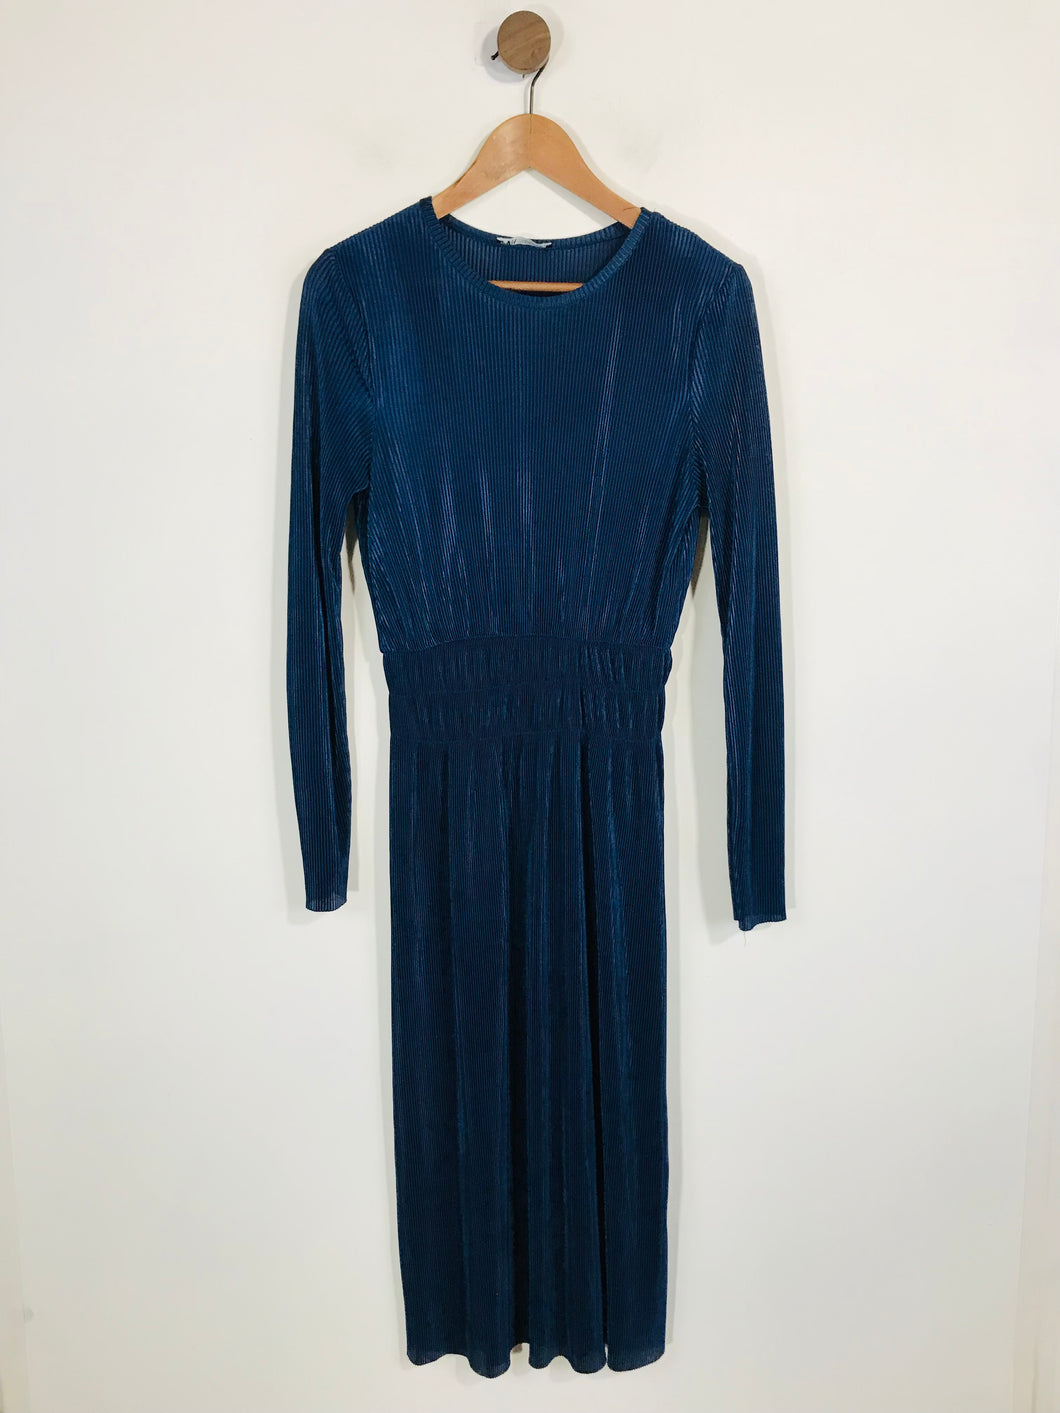 Zara Women's Long Sleeve Pleated A-line Dress | M UK10-12 | Blue